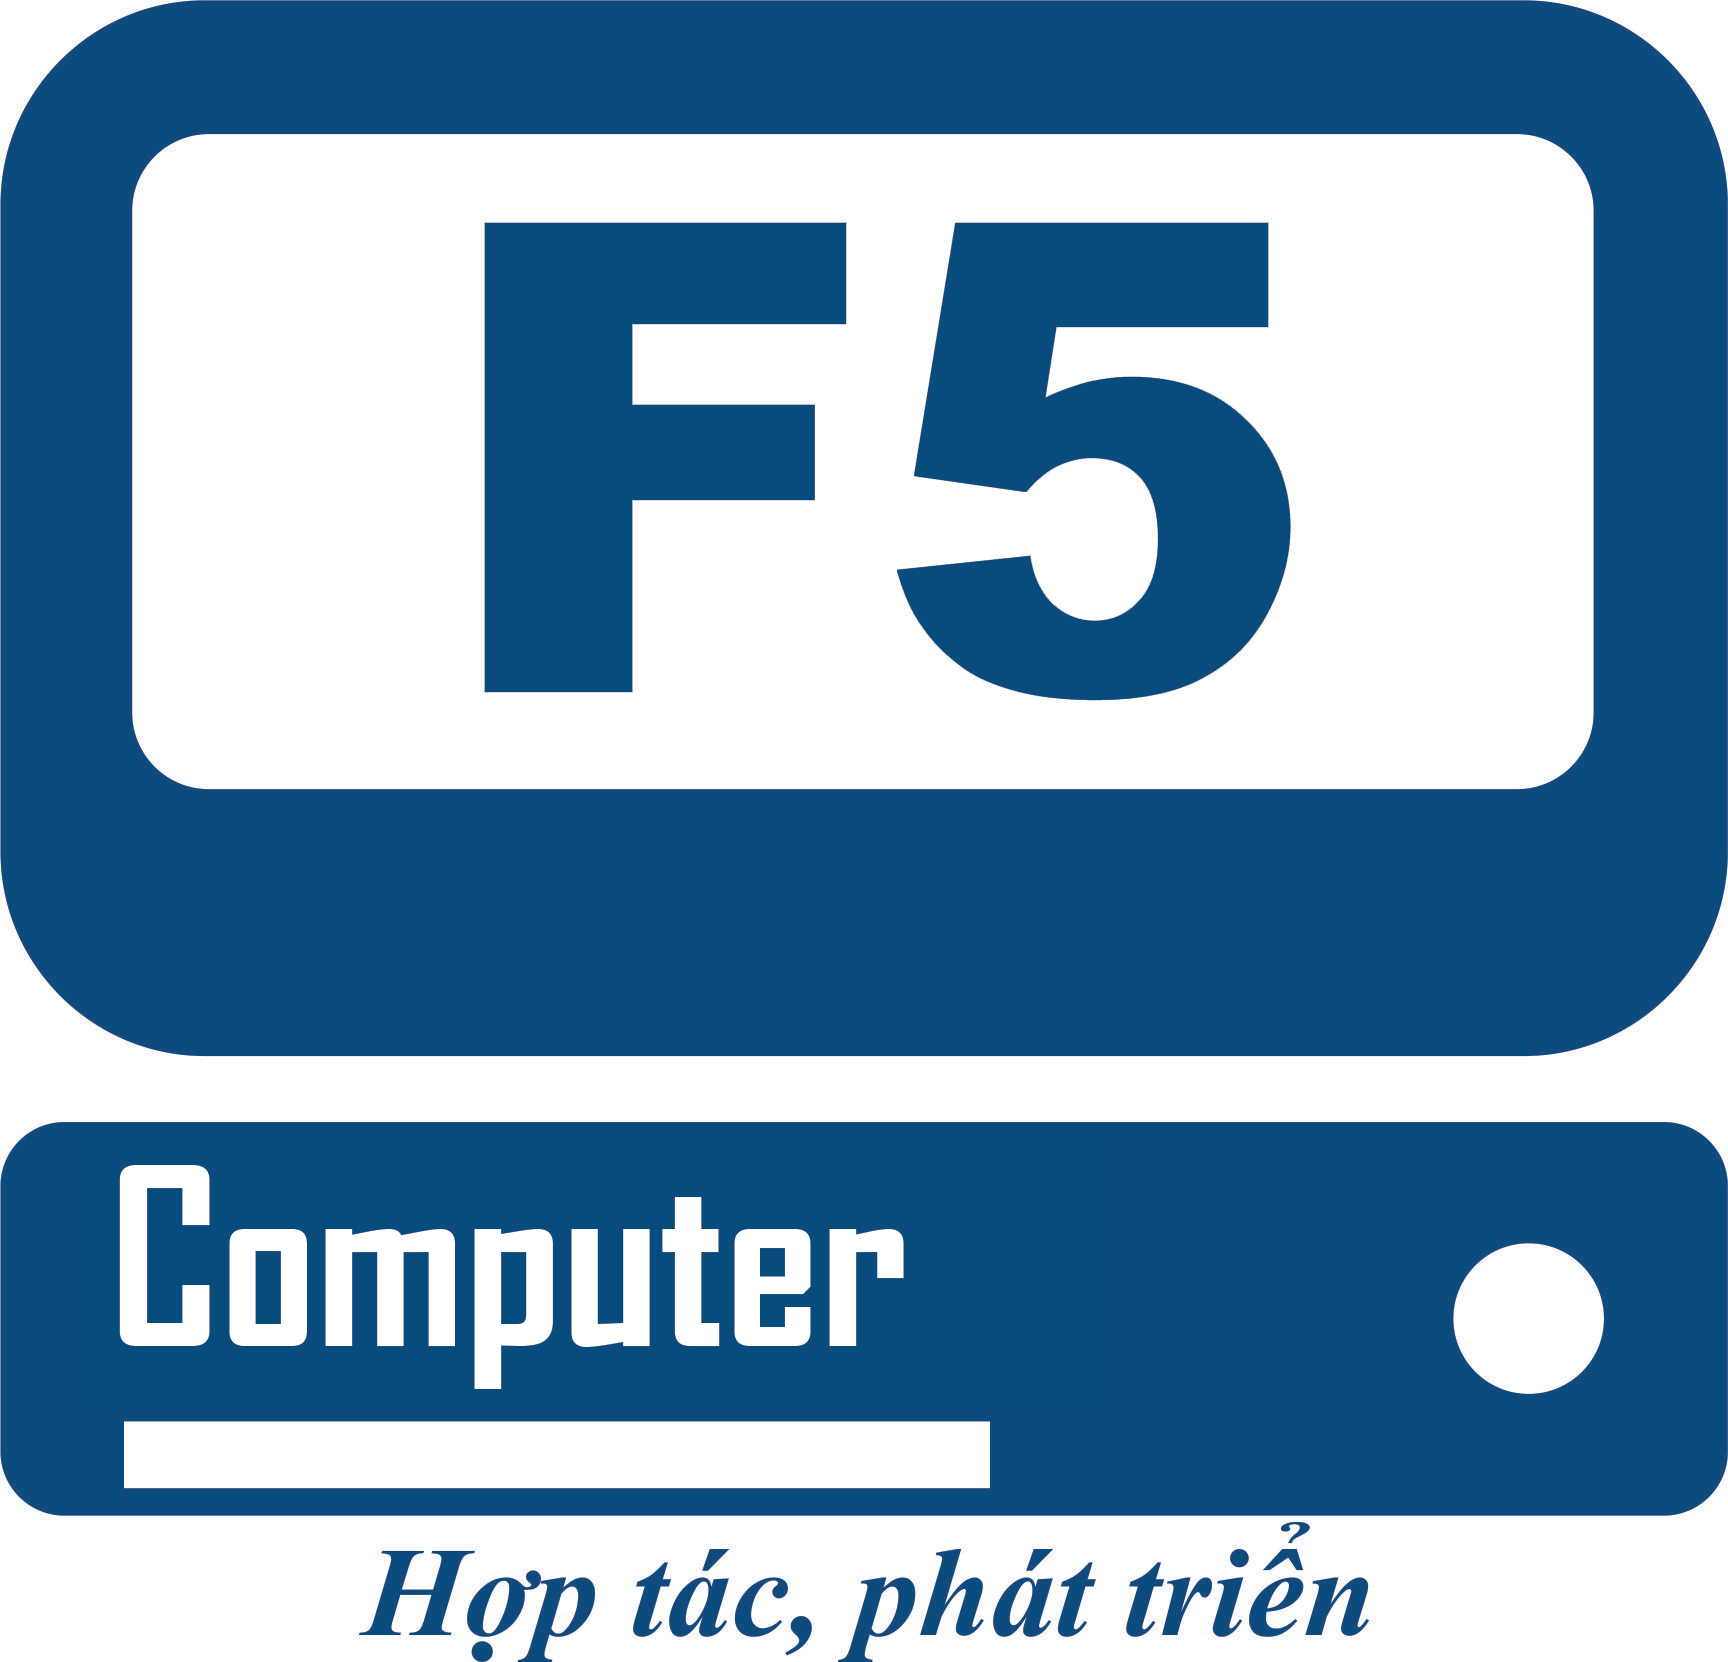 Máy Tính F5 - Máy tính - Máy in - Camera giám sát - Hệ thống mạng - Tổng đài nội bộ - Dịch vụ sửa chữa - Phần mềm bản quyền